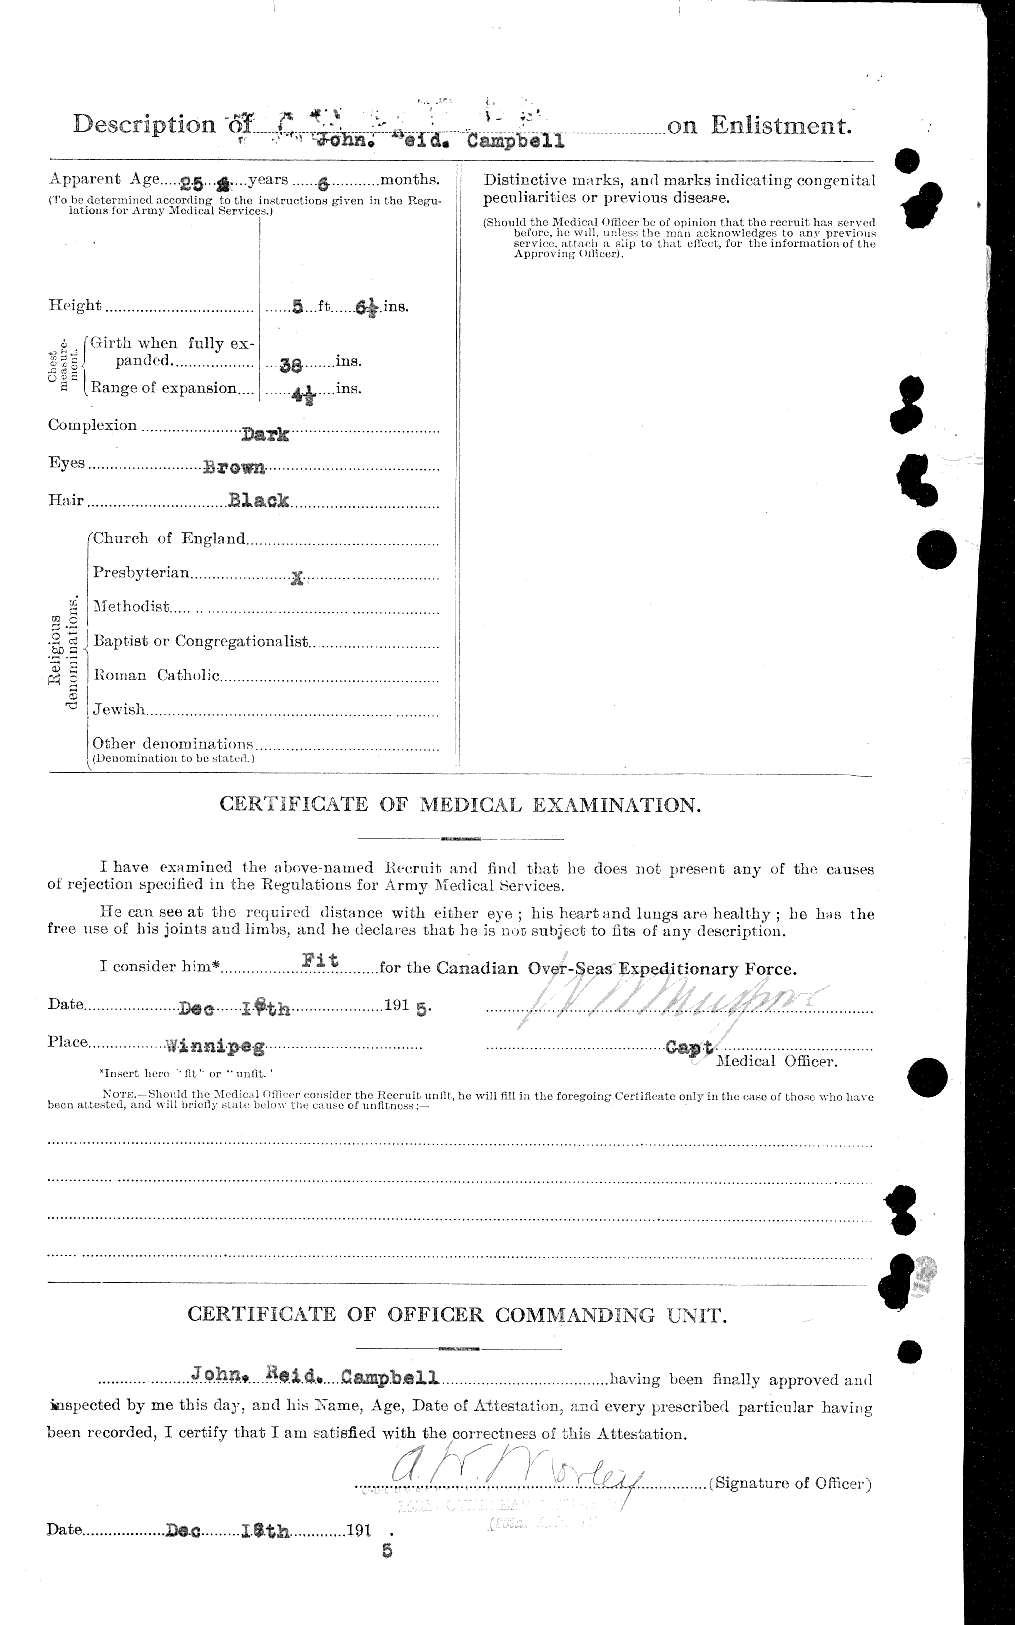 Dossiers du Personnel de la Première Guerre mondiale - CEC 003774b